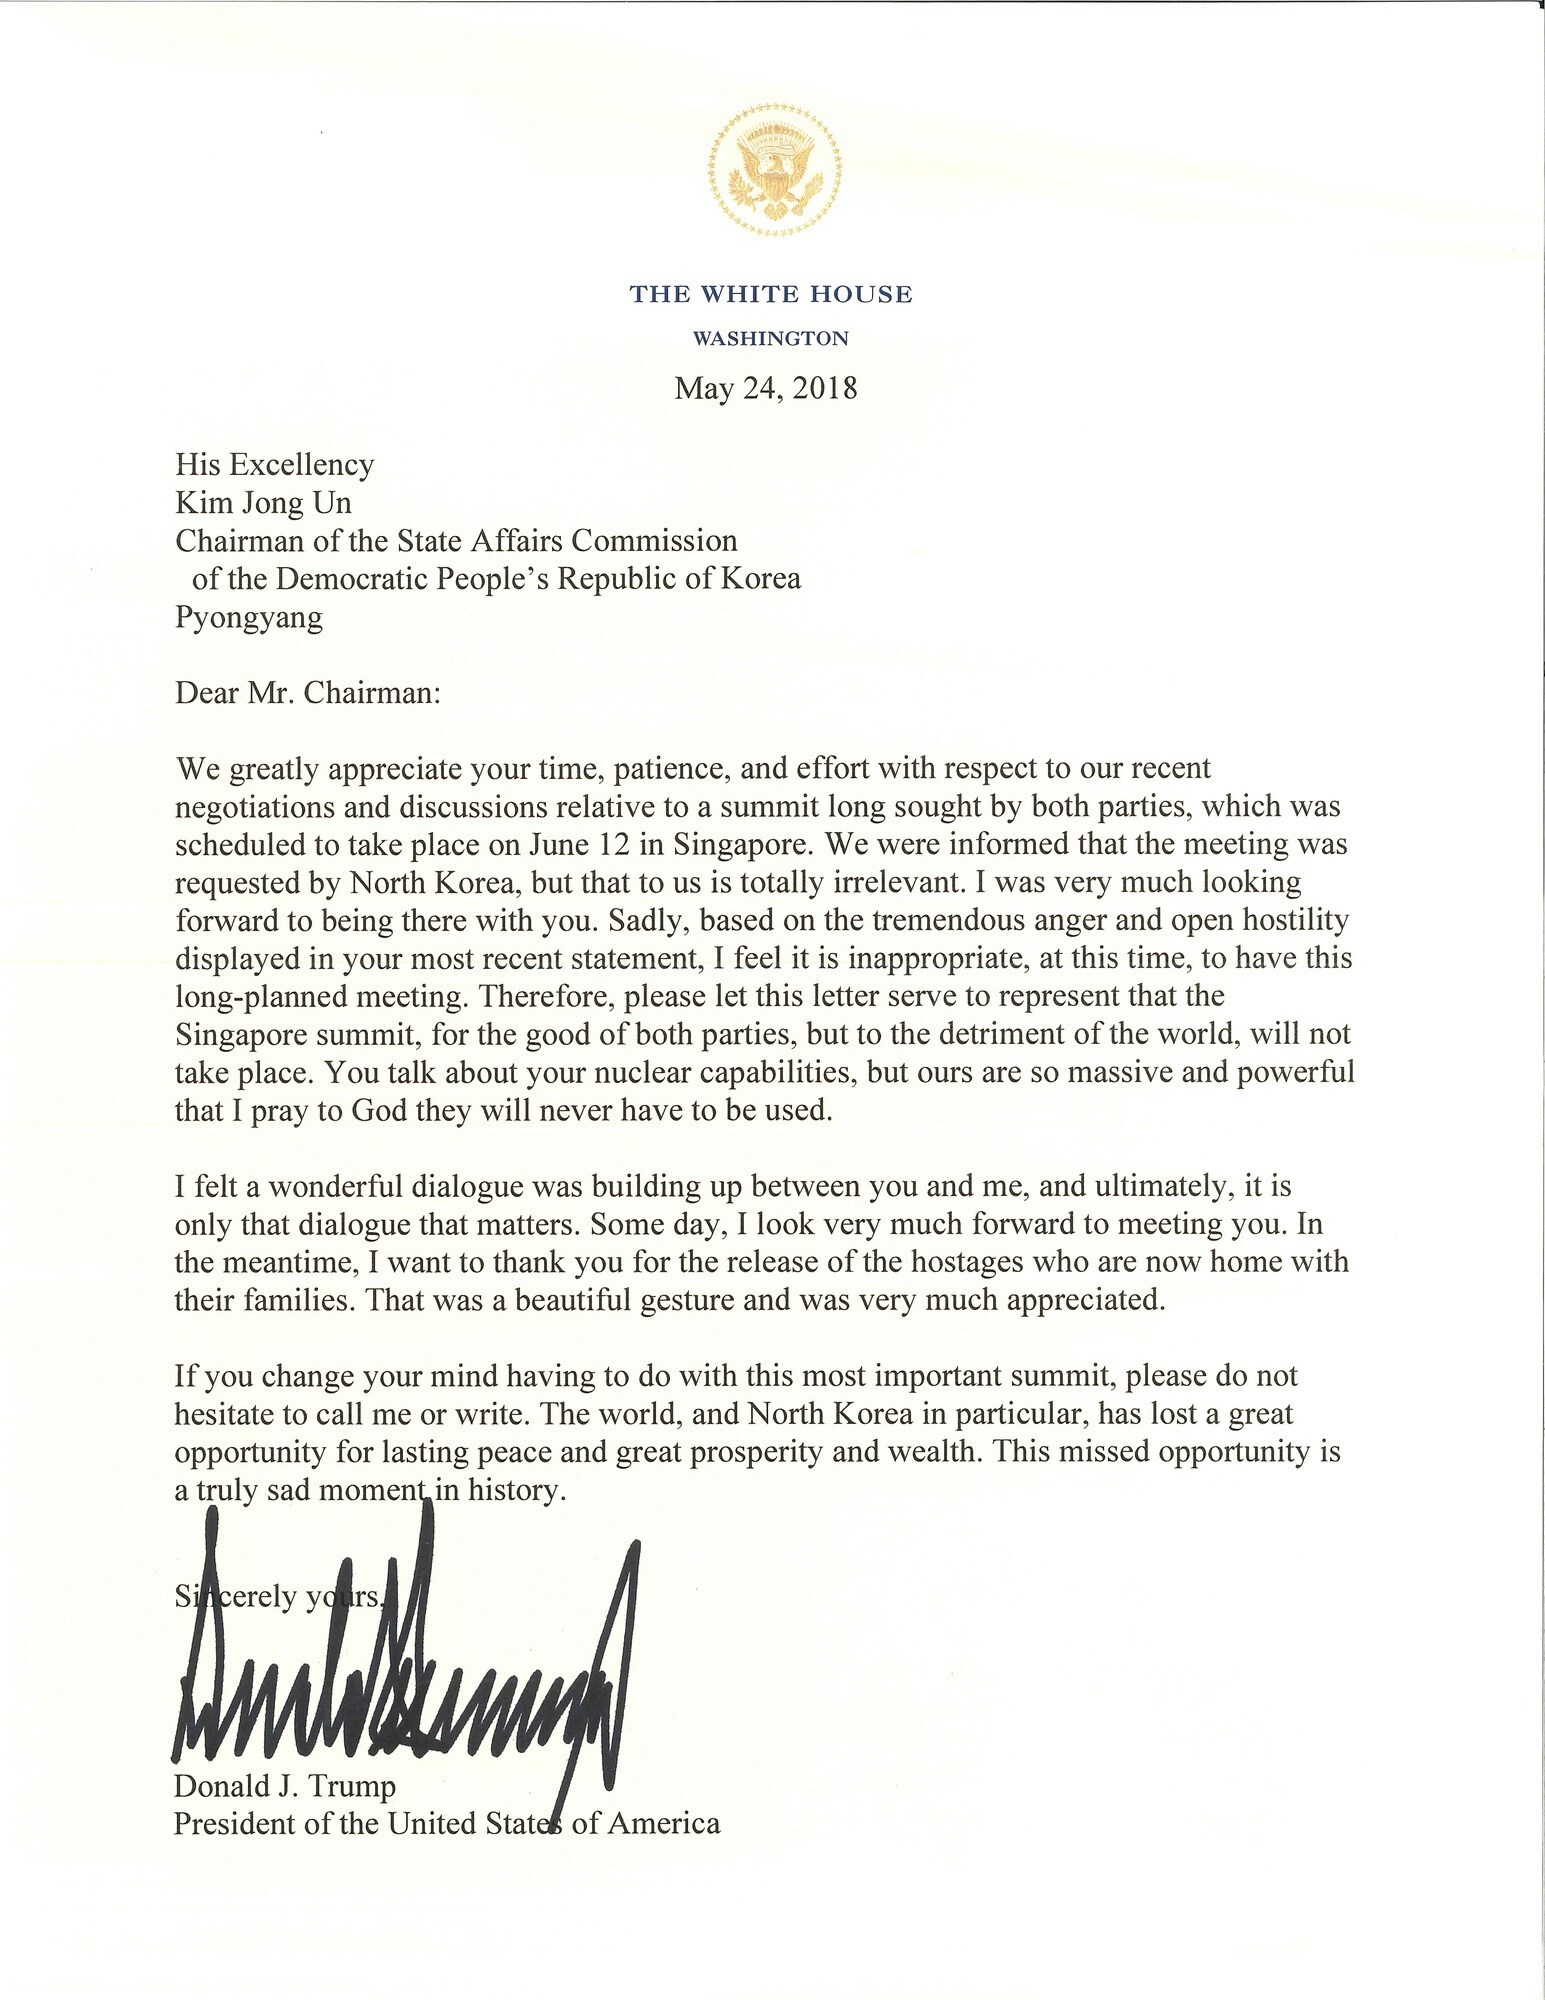 Dit kunnen we afleiden uit de brief van Trump aan Kim Jong-un